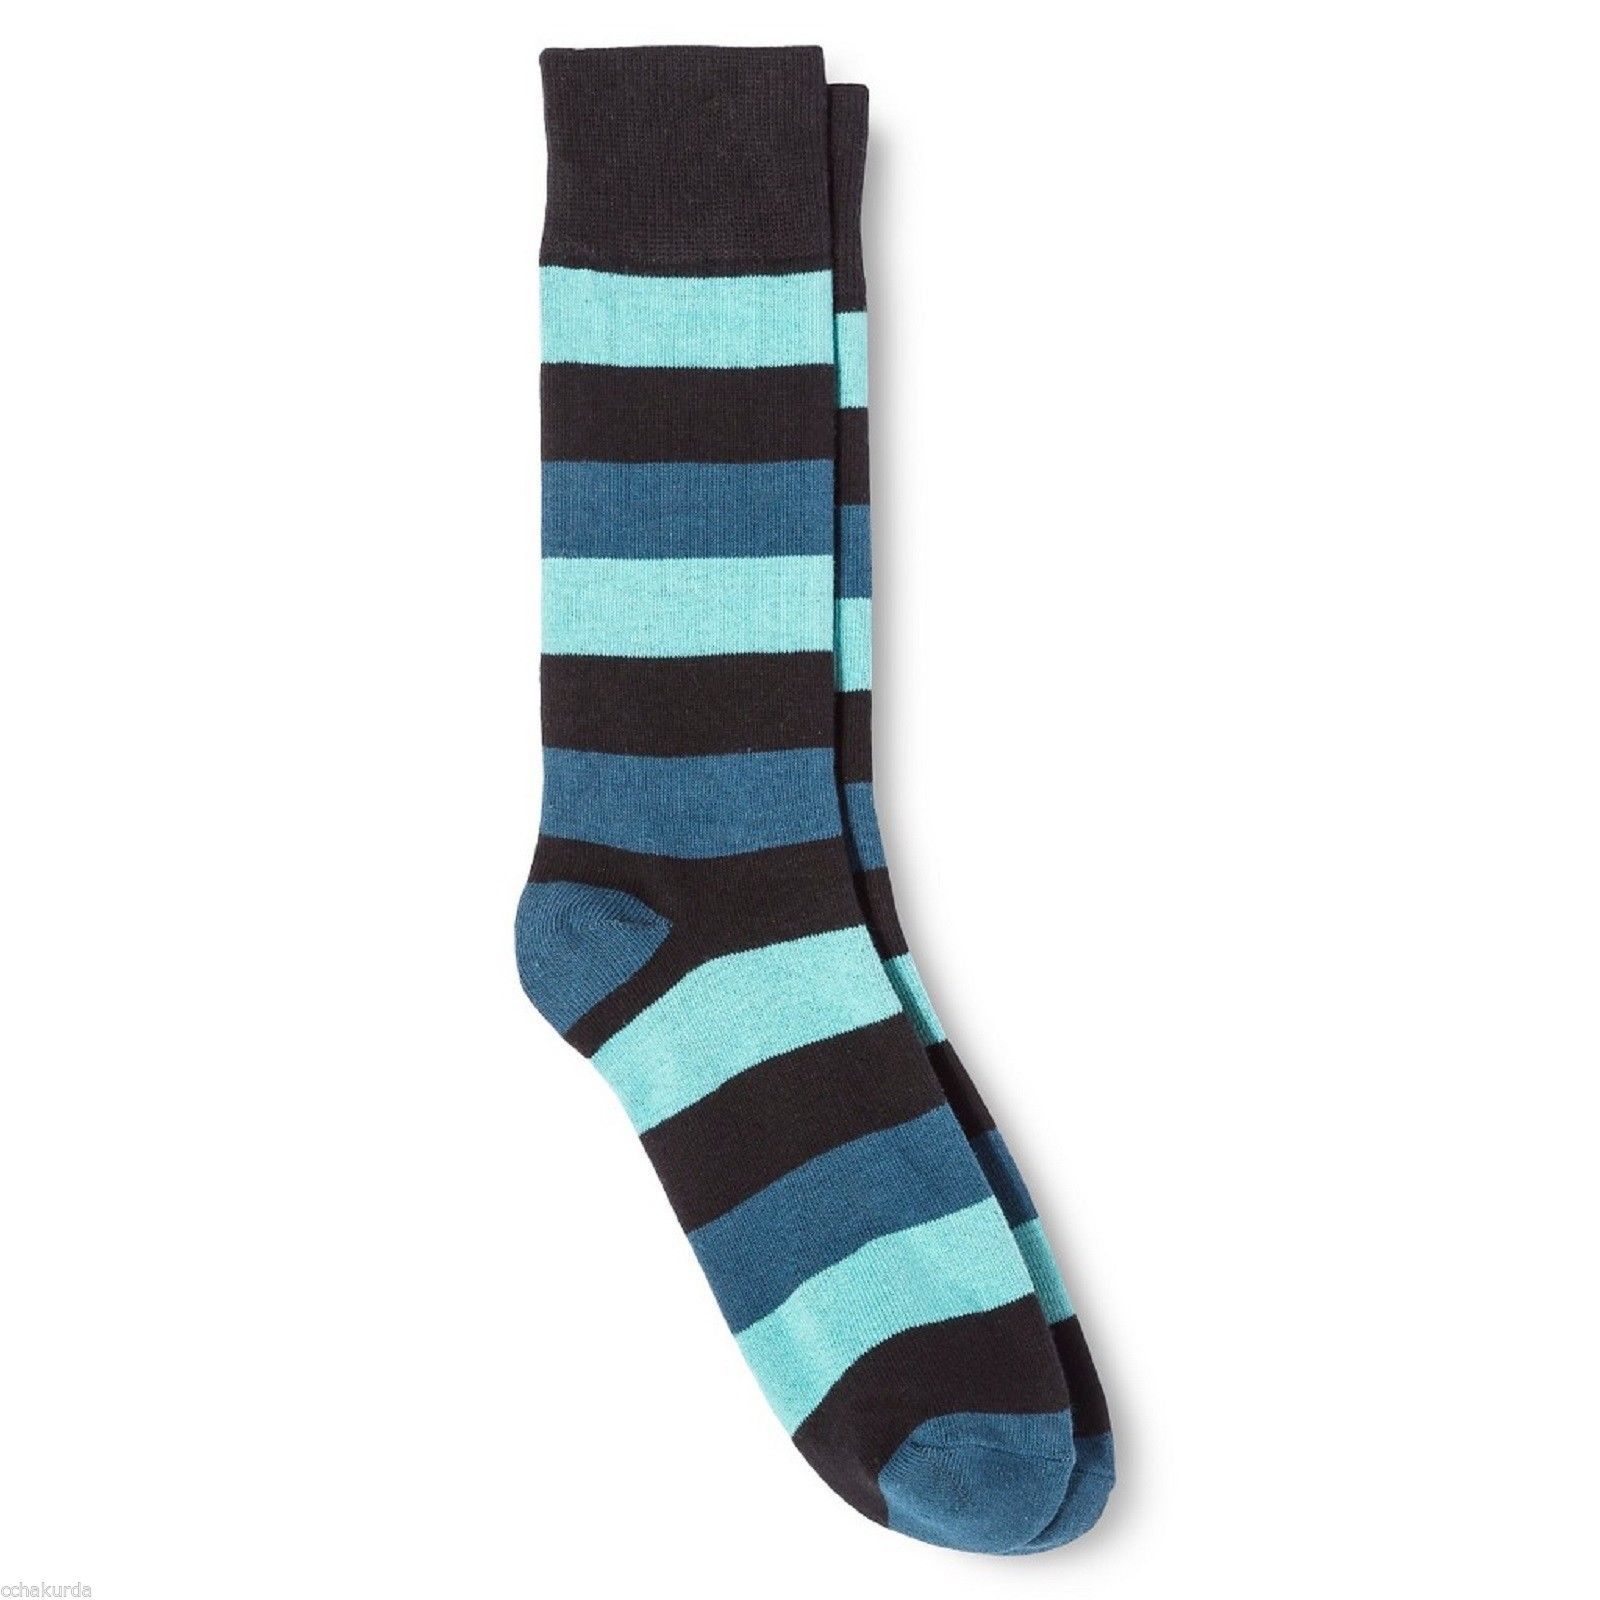 Dress Socks 6 12 Merona Blue Black Wide Stripes NEW Mens - $12.00